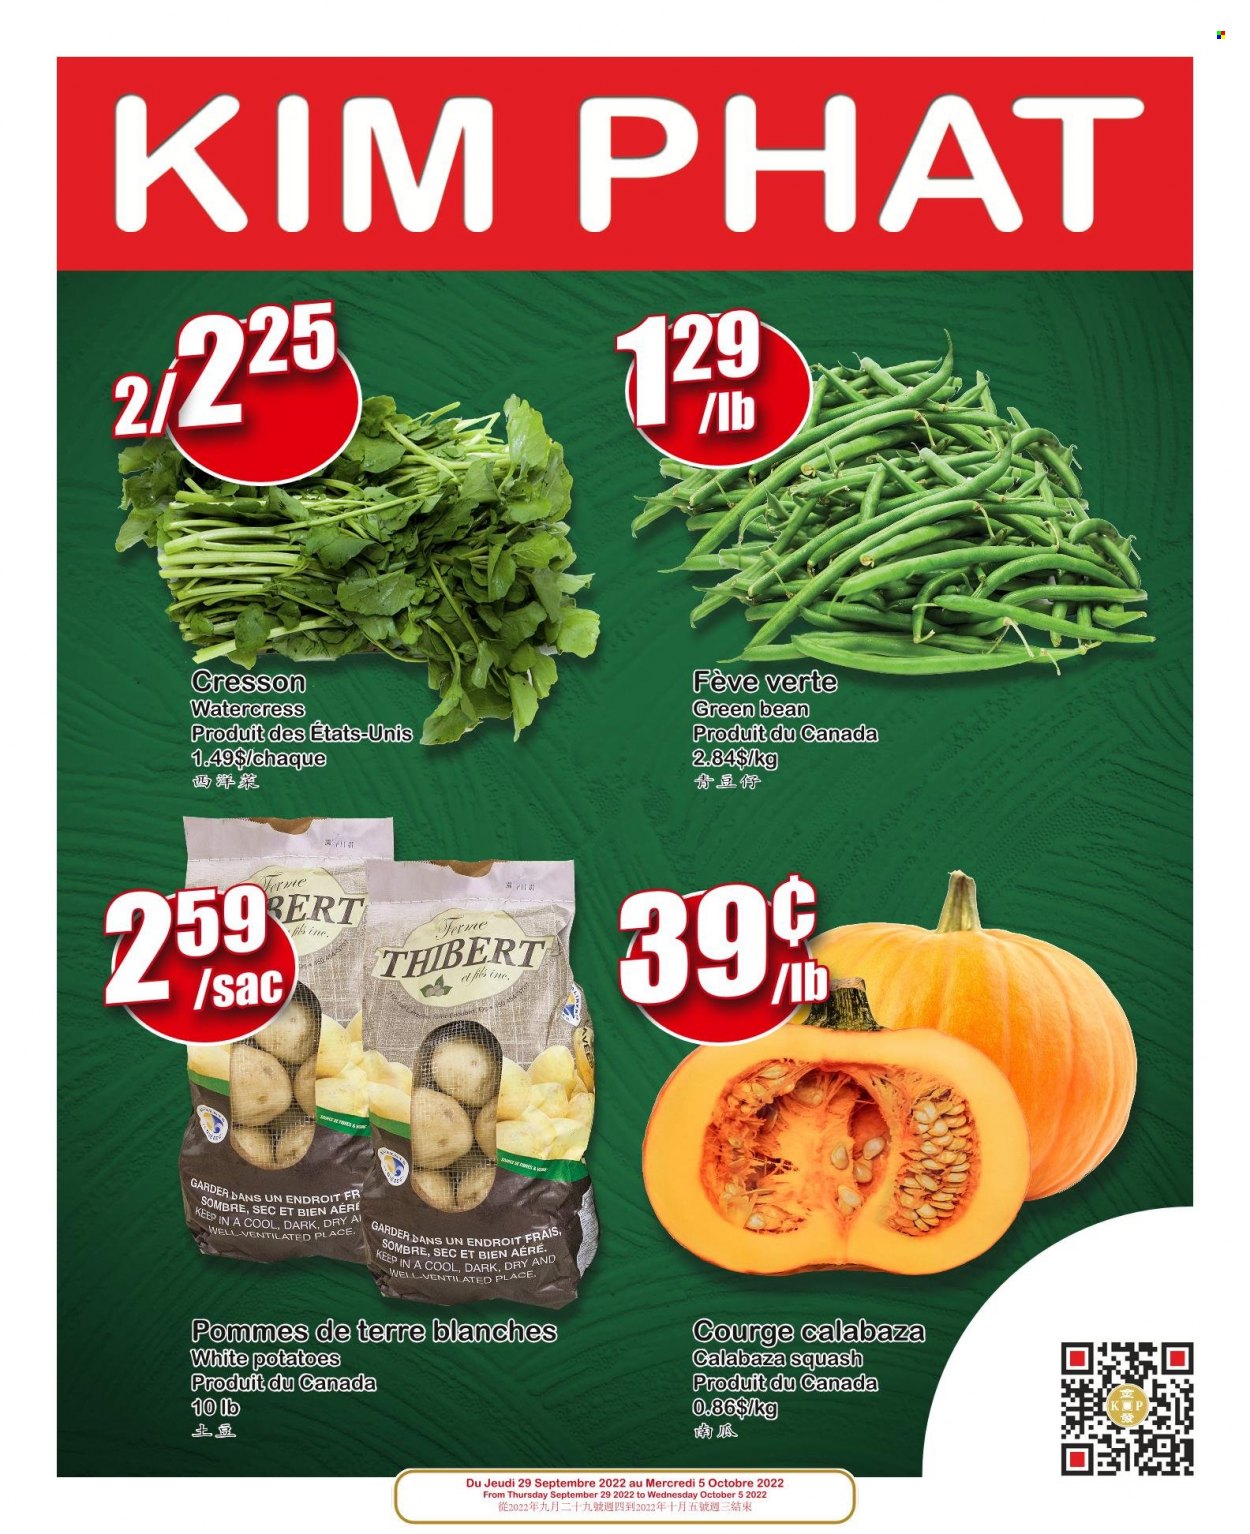 Kim Phat flyer  - September 29, 2022 - October 05, 2022.